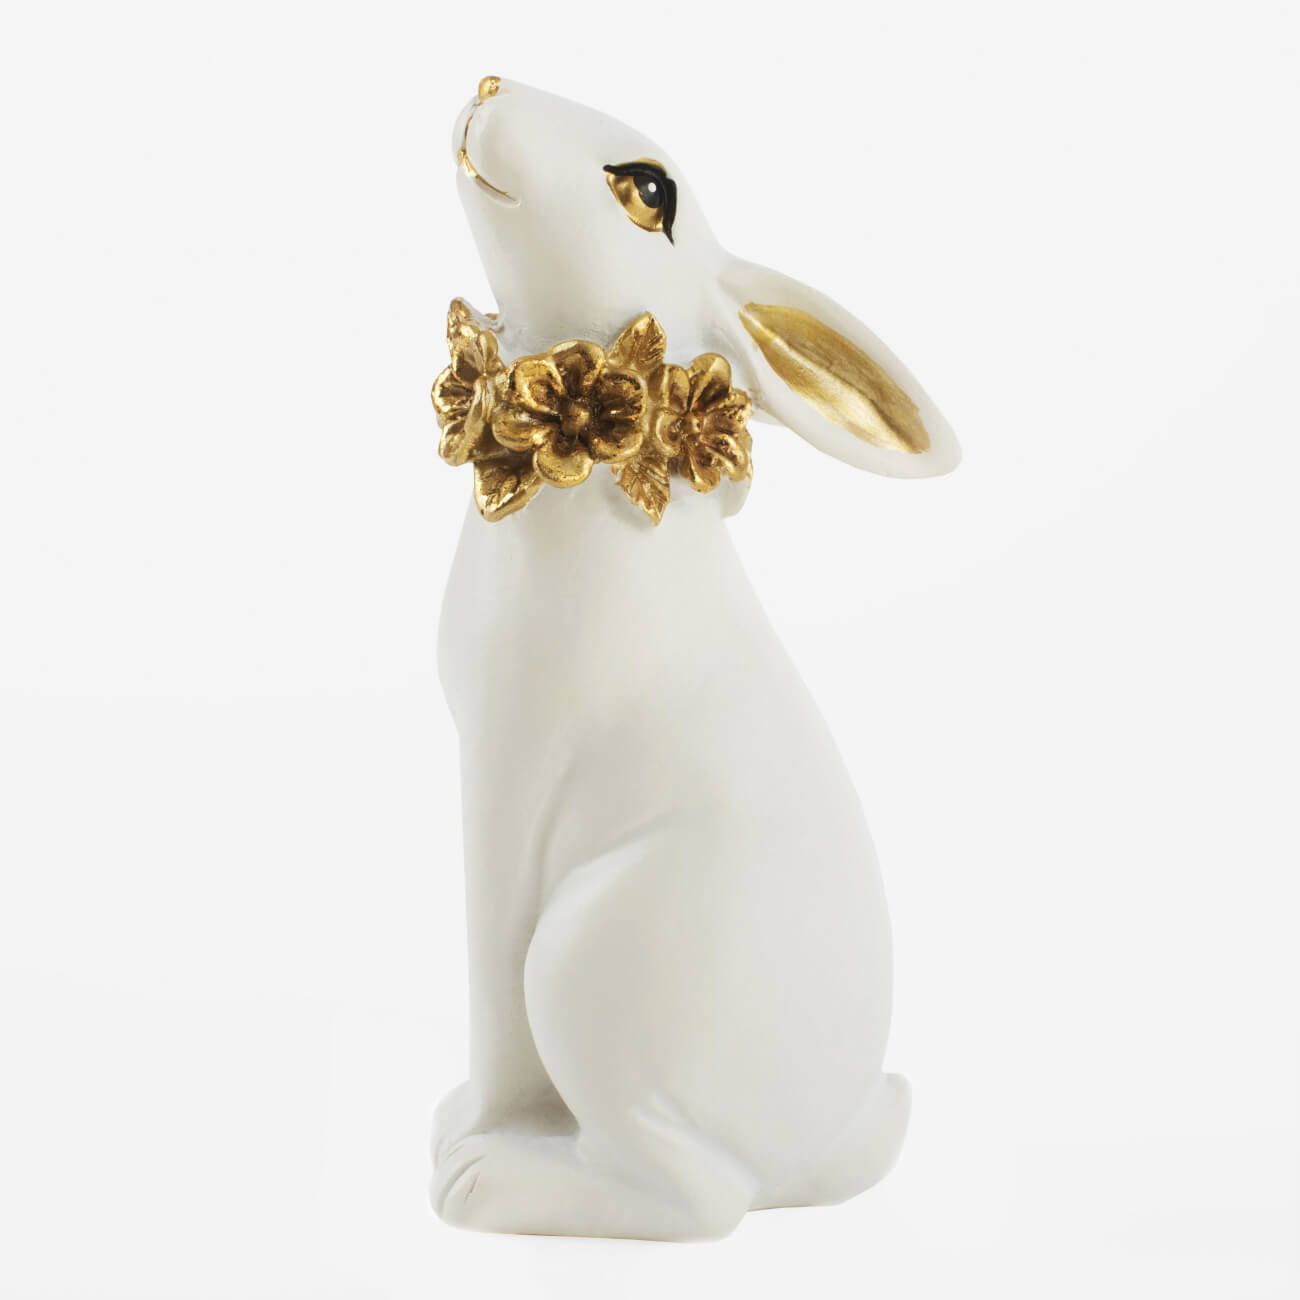 Статуэтка, 13 см, полирезин, бело-золотистая, Кролик с цветочным ожерельем, Easter gold статуэтка 21 см полирезин красная бык art modern